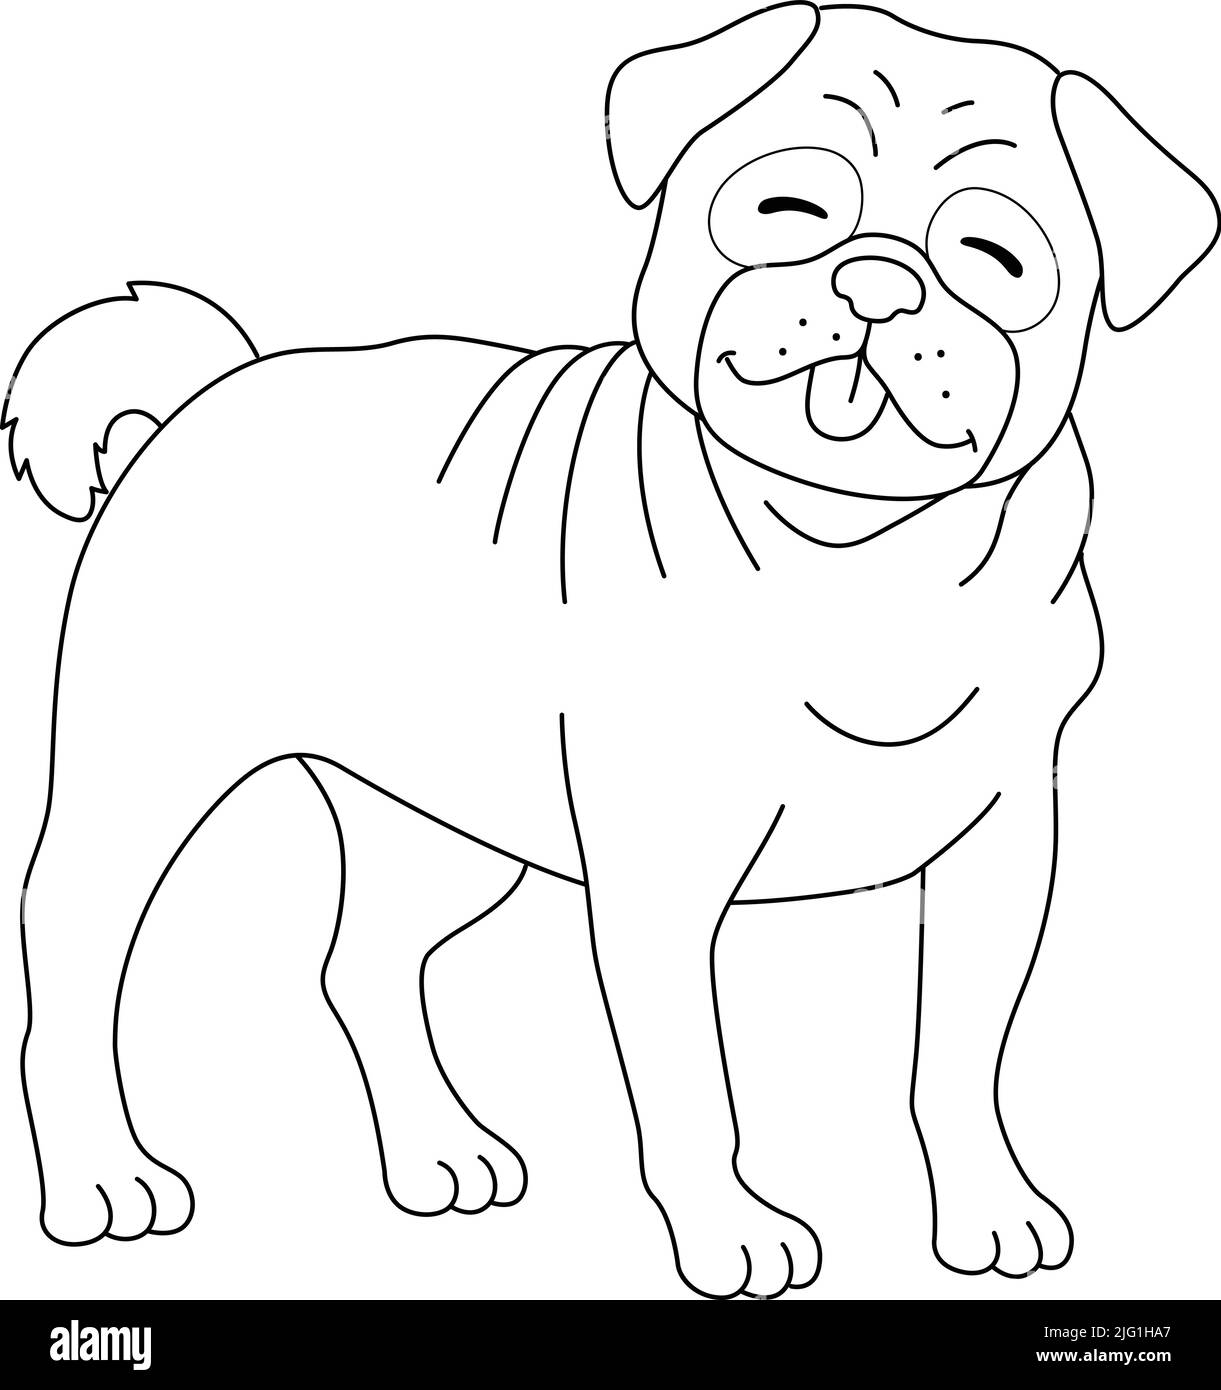 Pug drawing Imágenes de stock en blanco y negro - Alamy